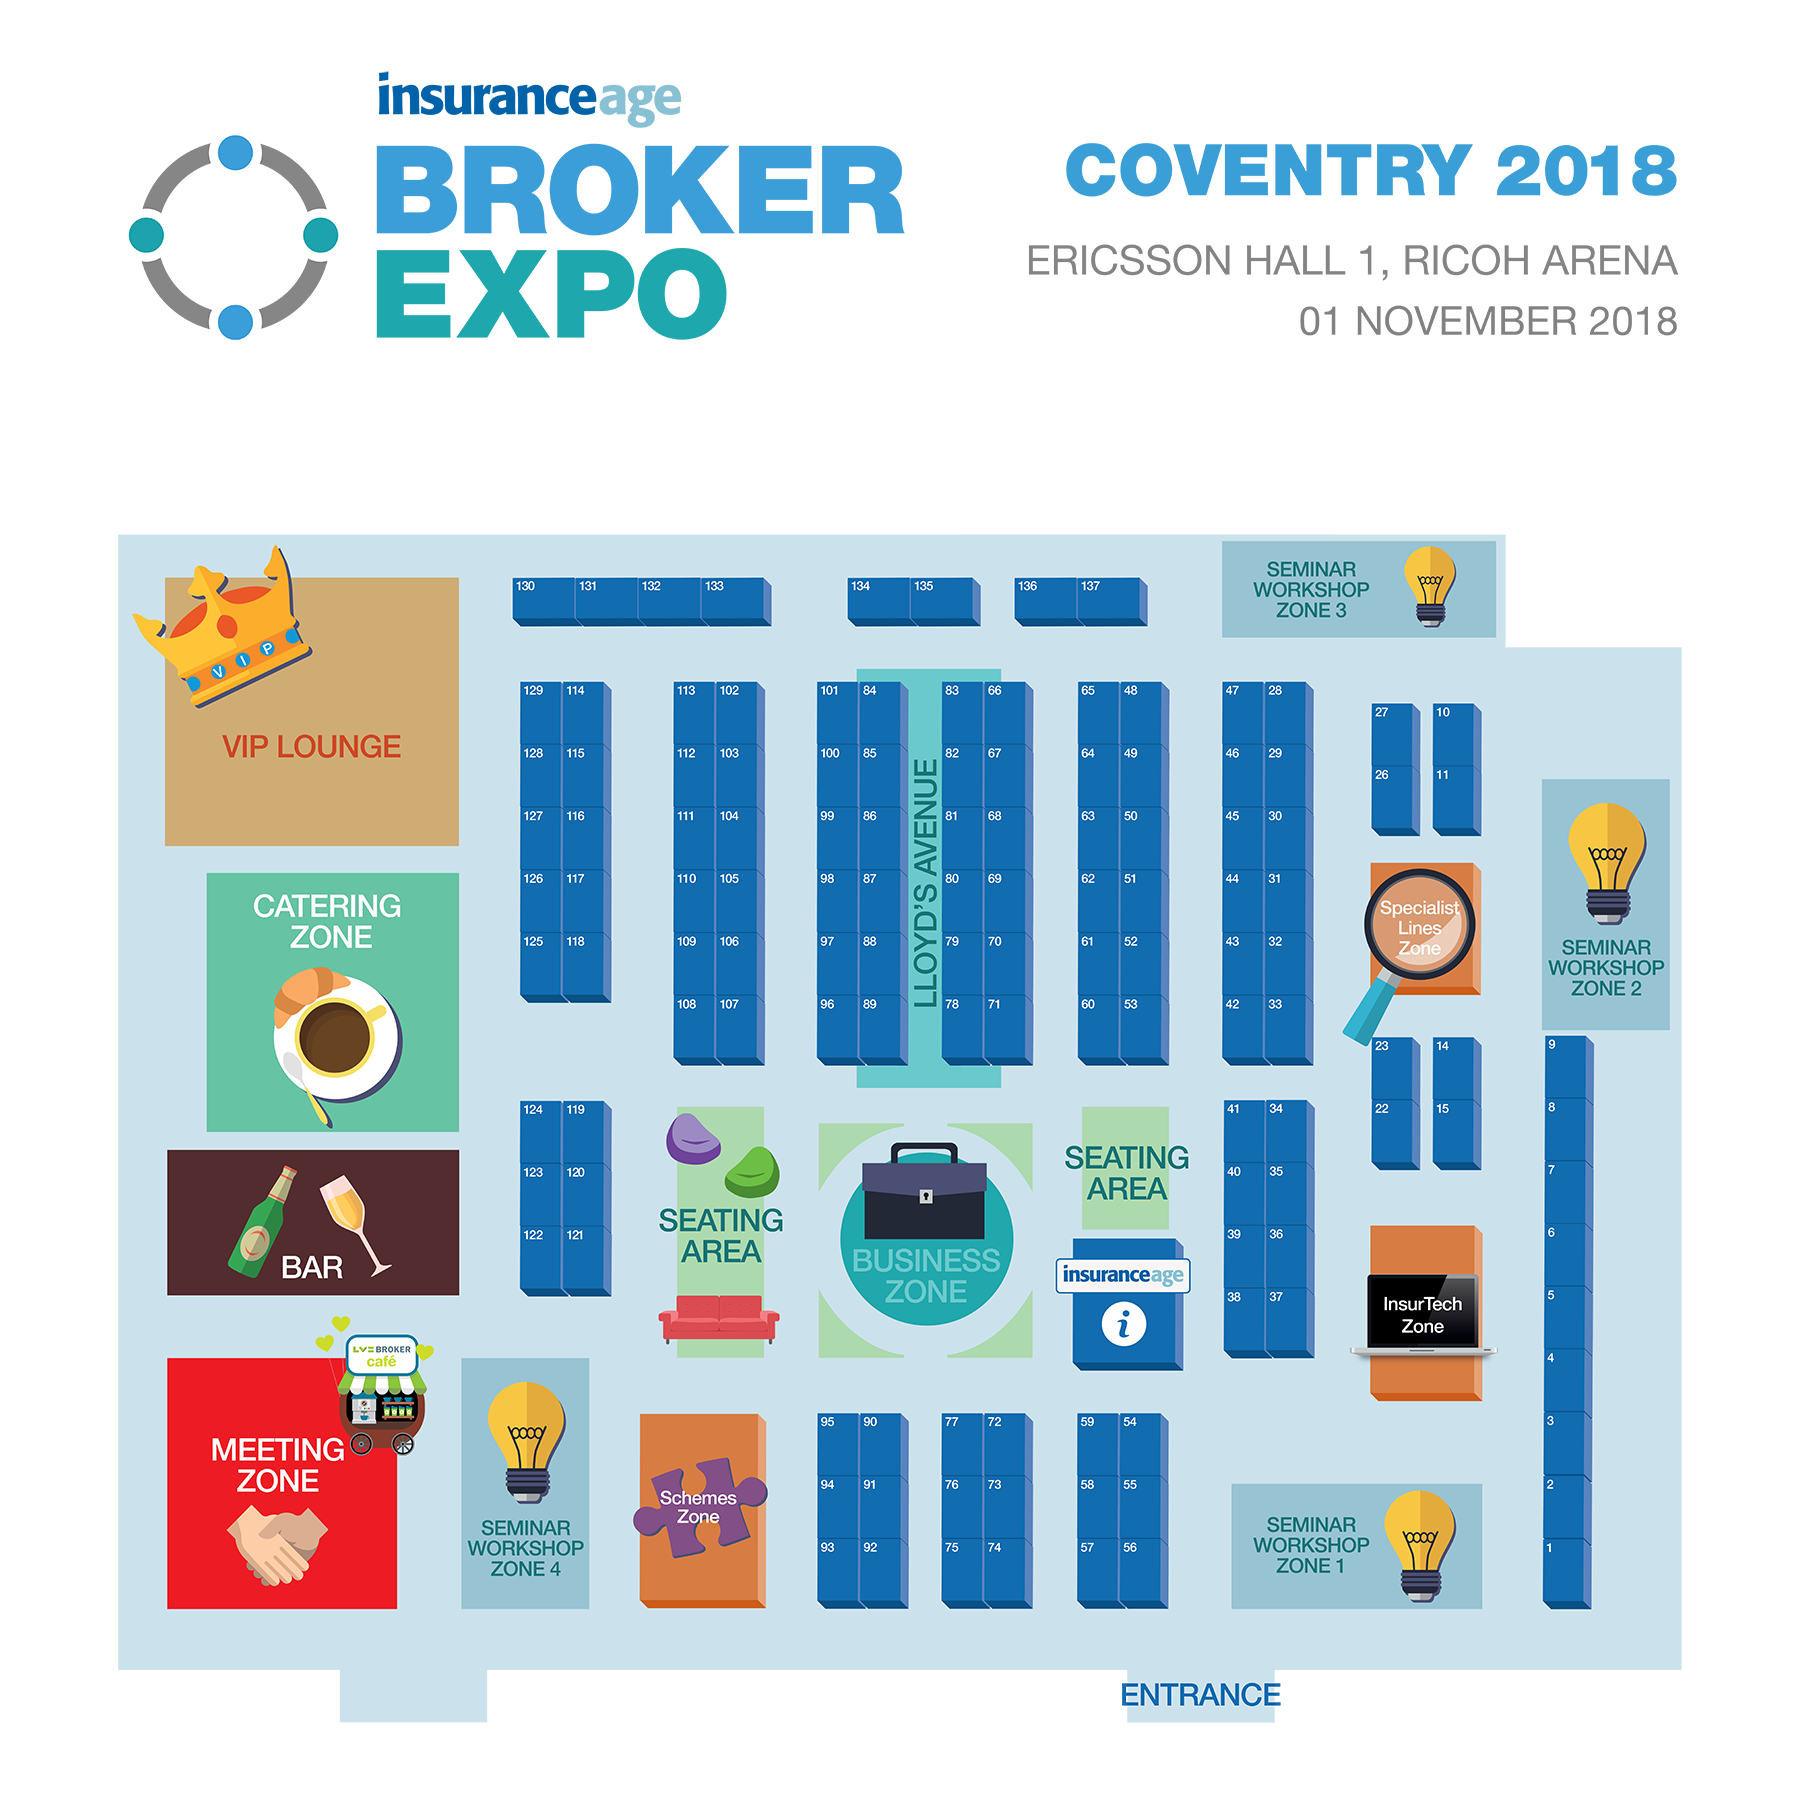 Broker Expo 2018 floorplan